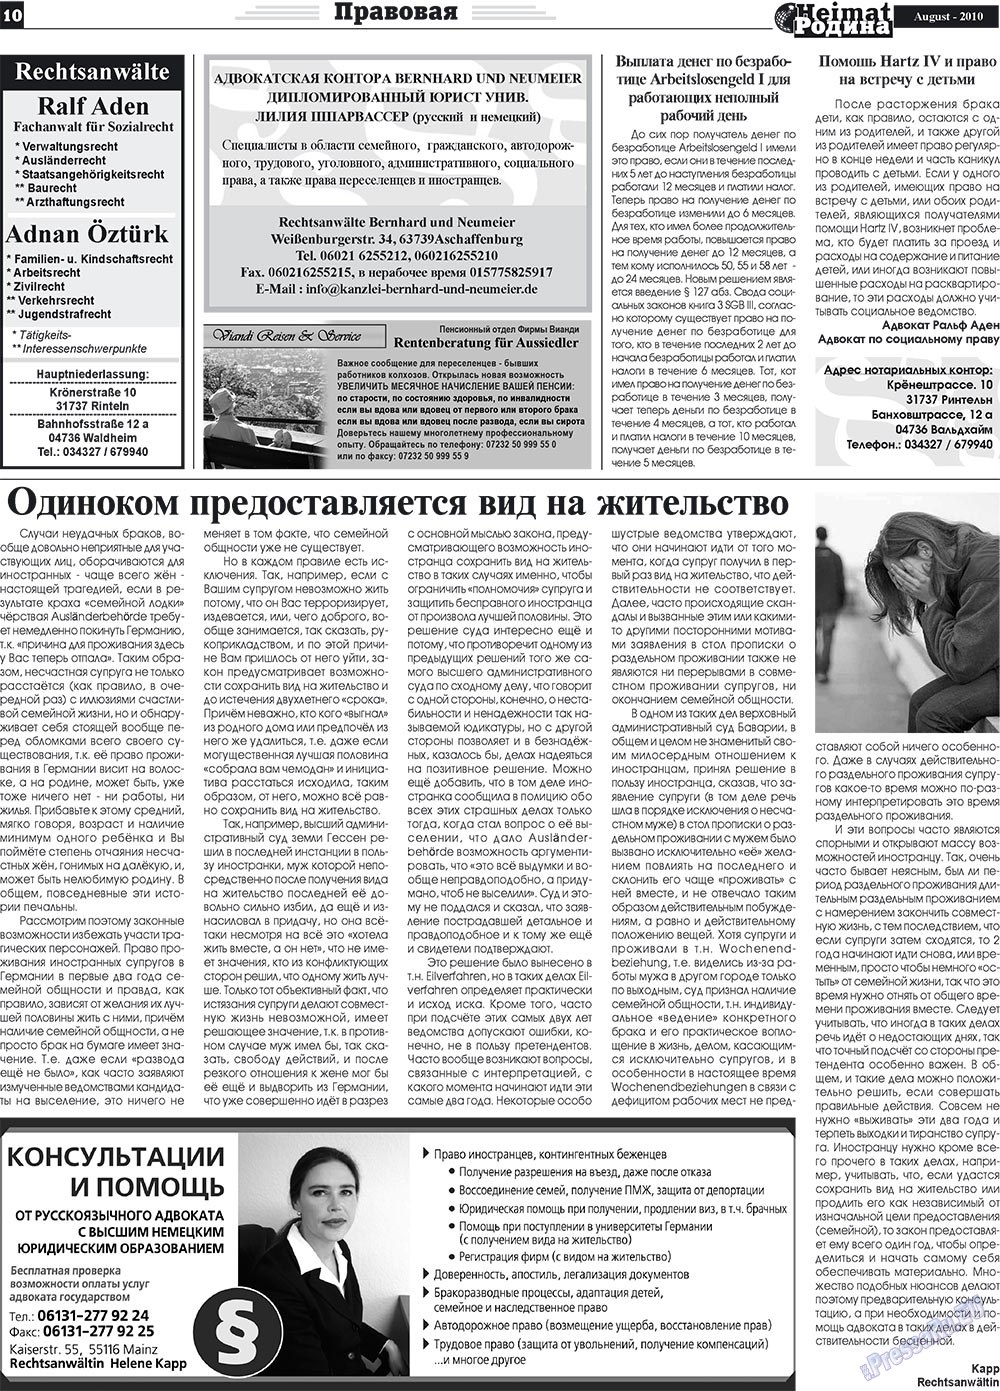 Heimat-Родина (газета). 2010 год, номер 8, стр. 10